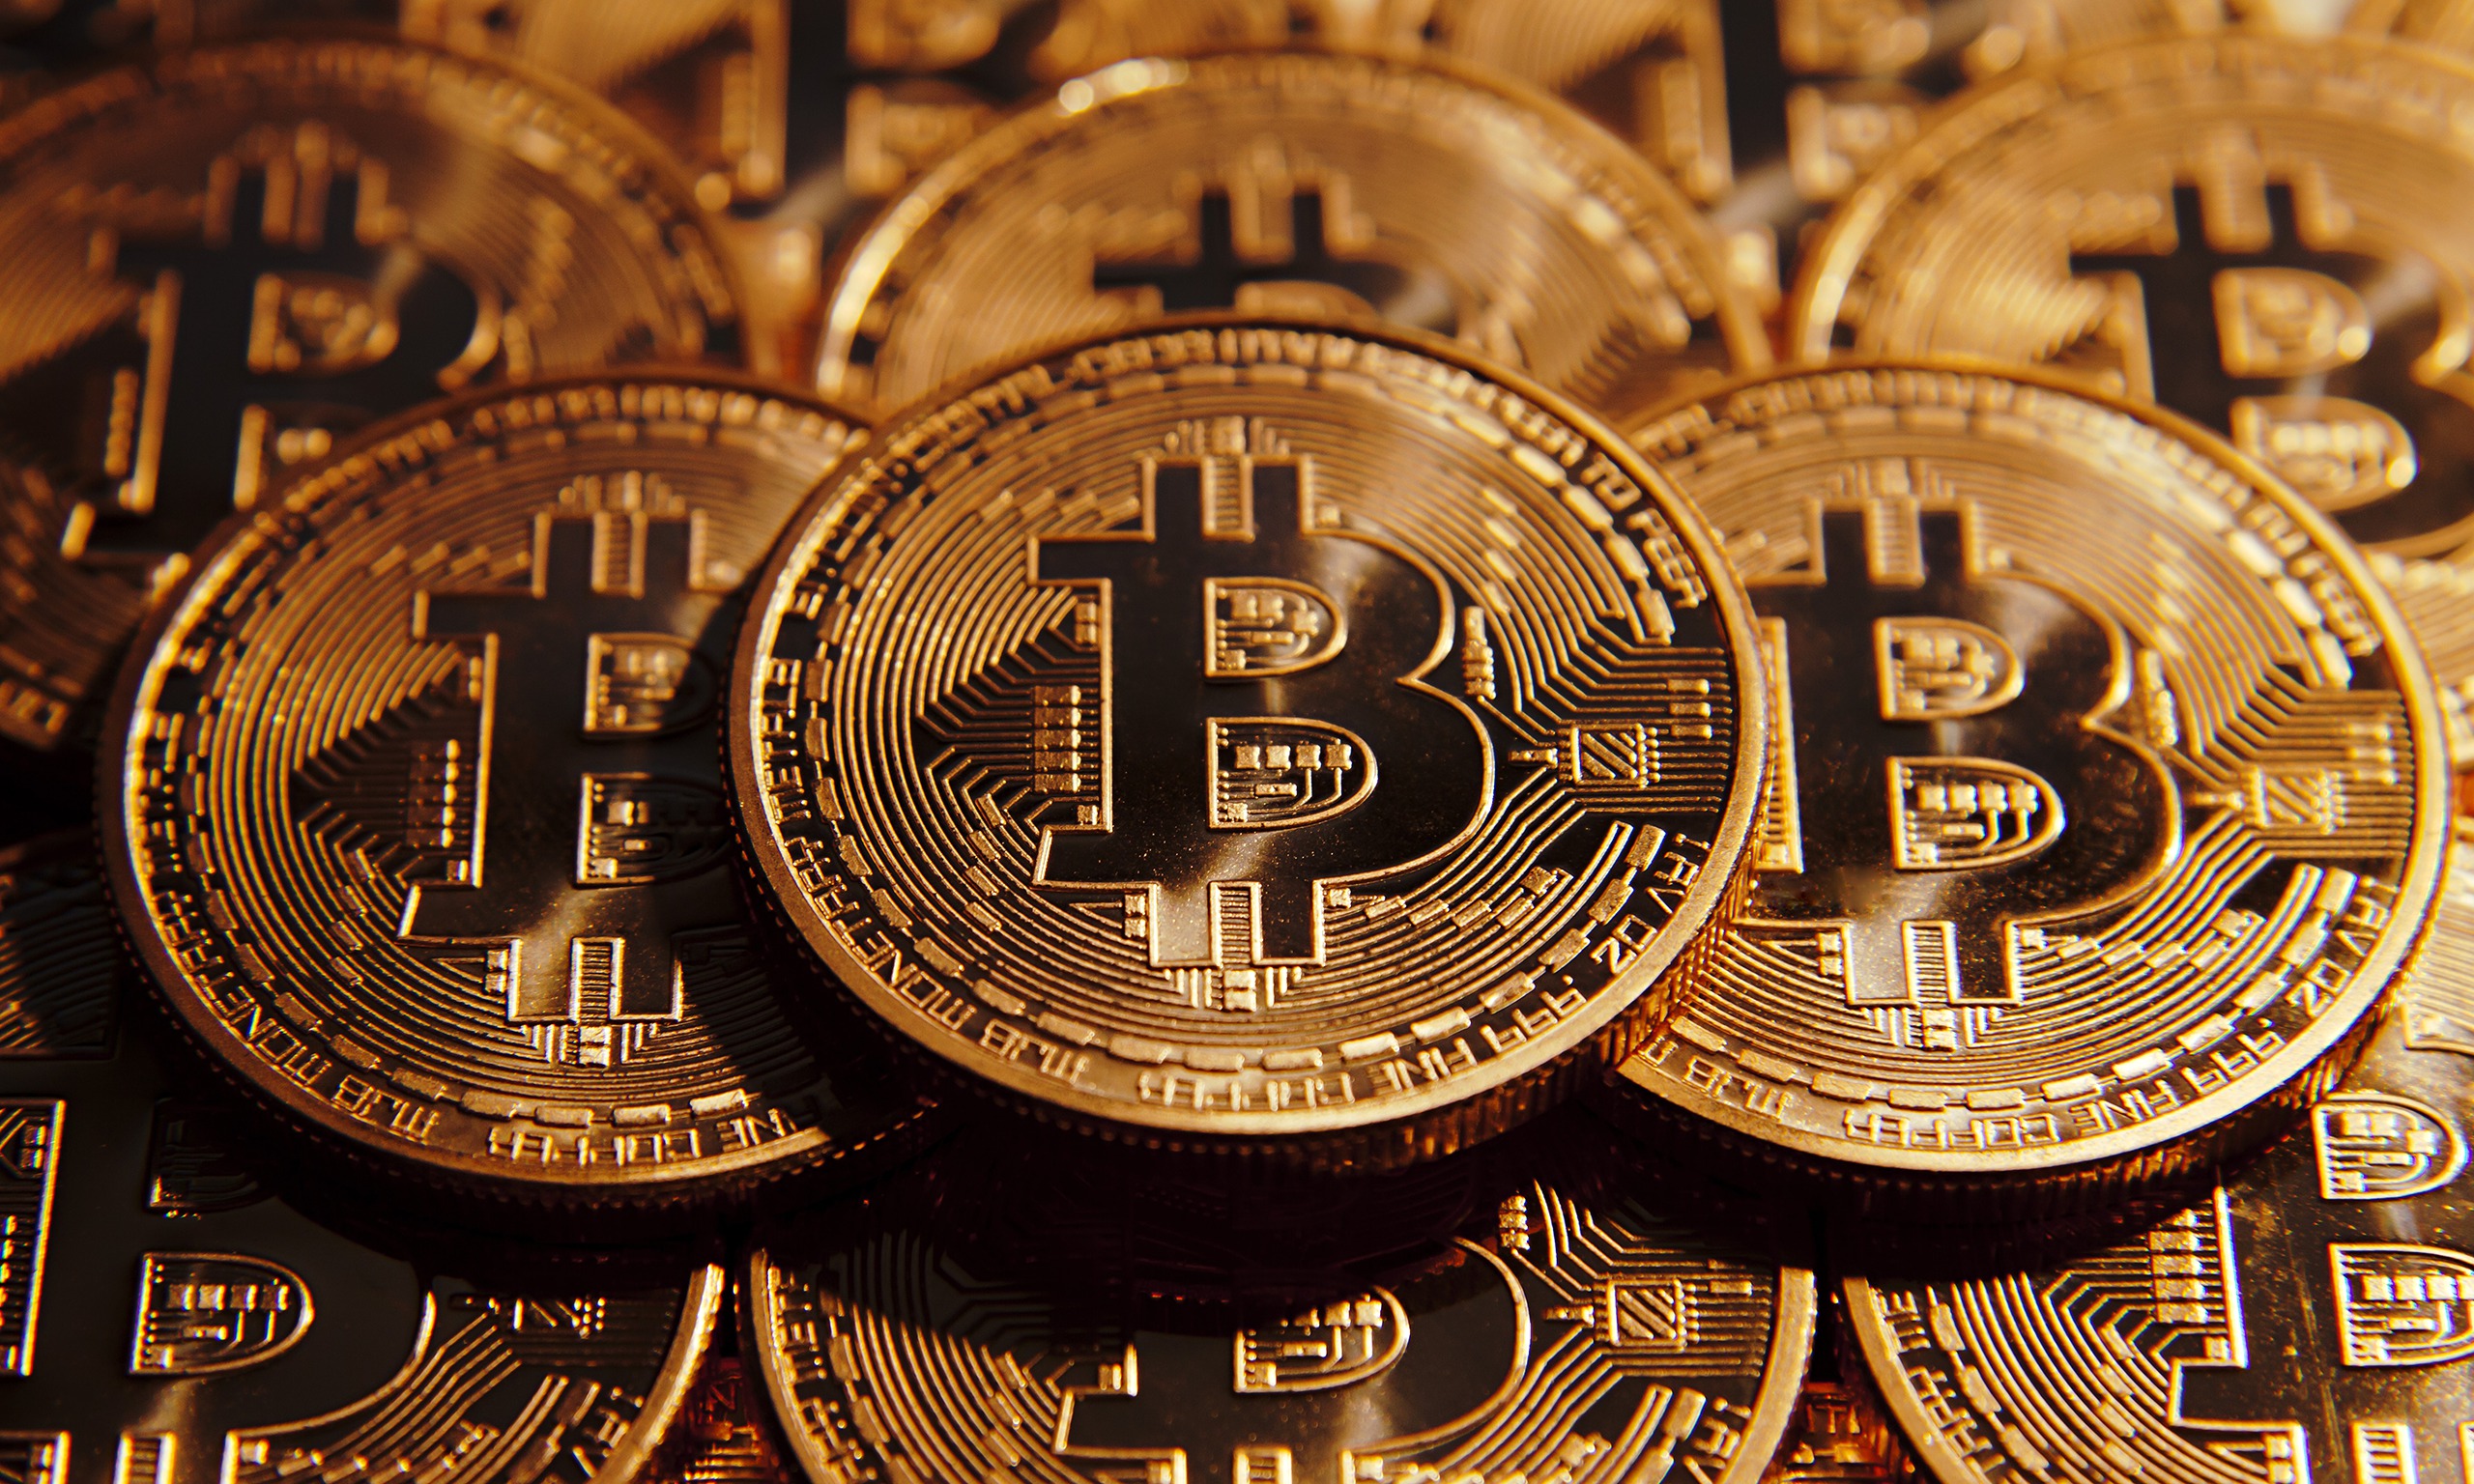 Buy bitcoin 2019 Bitcoin Price Prediction